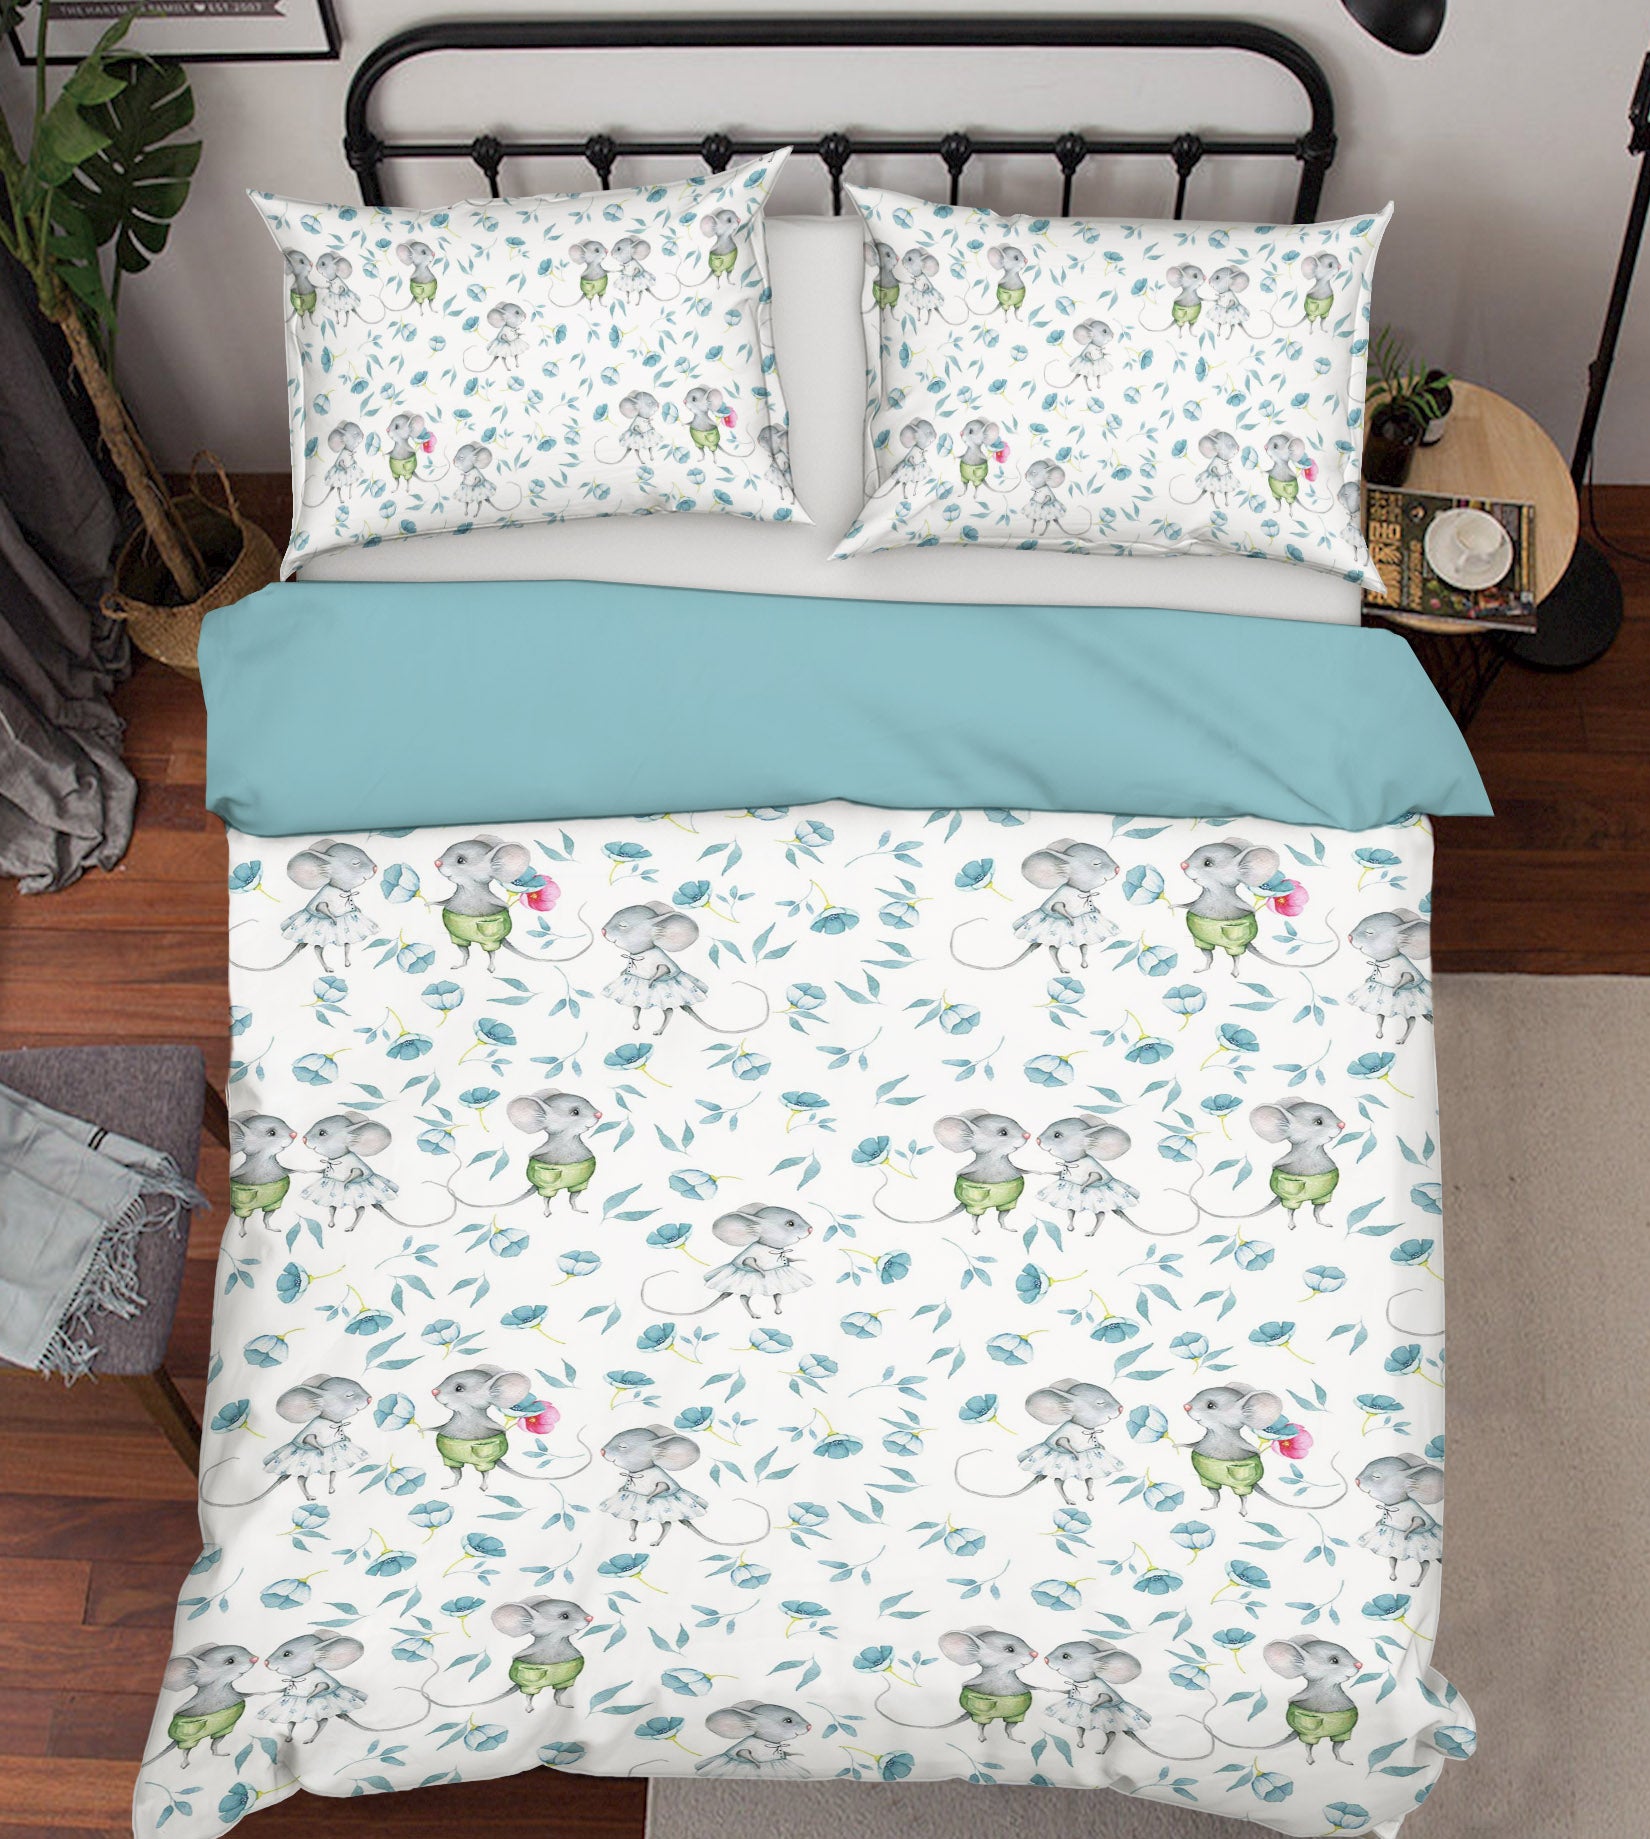 3D Cartoon Mouse 197 Uta Naumann Bedding Bed Pillowcases Quilt